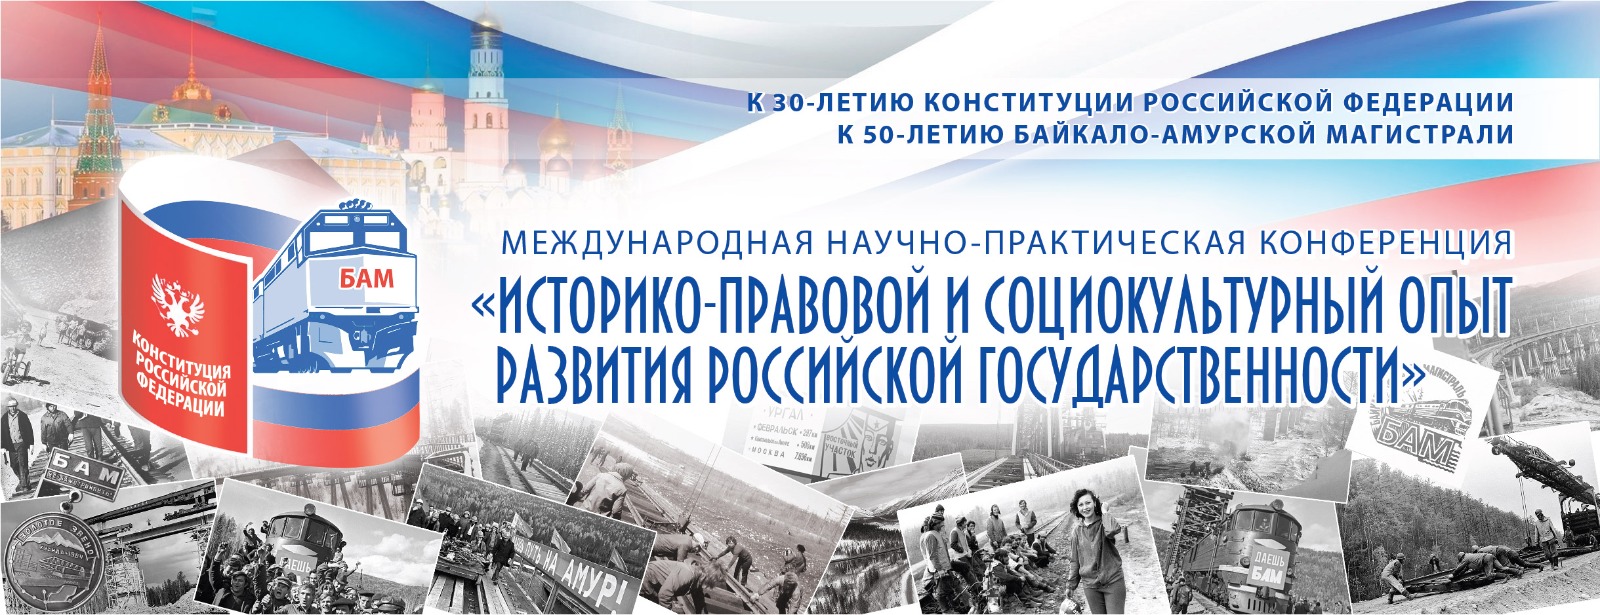 Конференция «Историко-правовой и социокультурный опыт развития российской государственности»